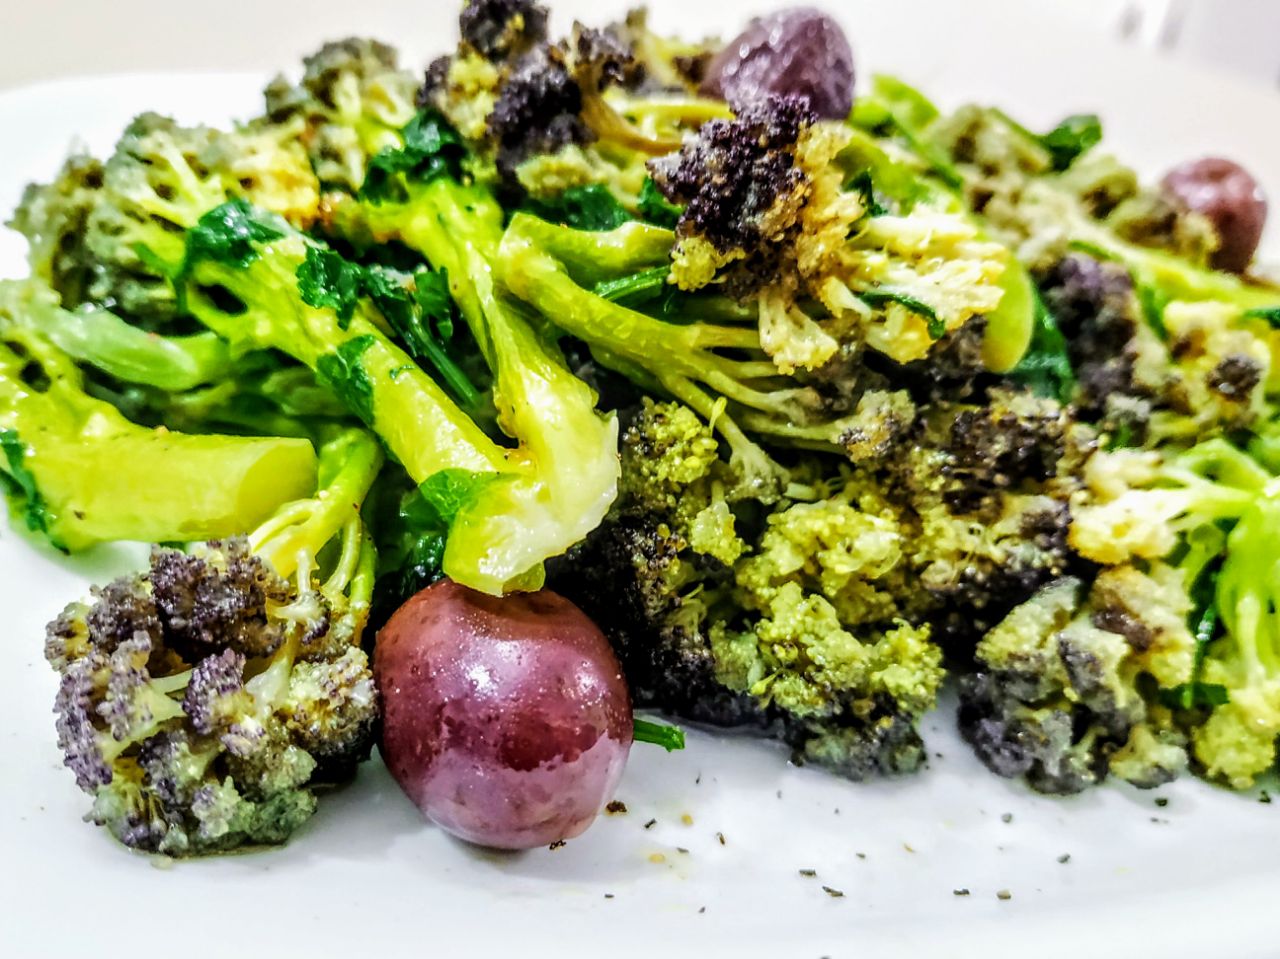 Contorni a base di verdure senza burro e senza formaggio: broccoli con prezzemolo olive greche e olio extravergine d'oliva